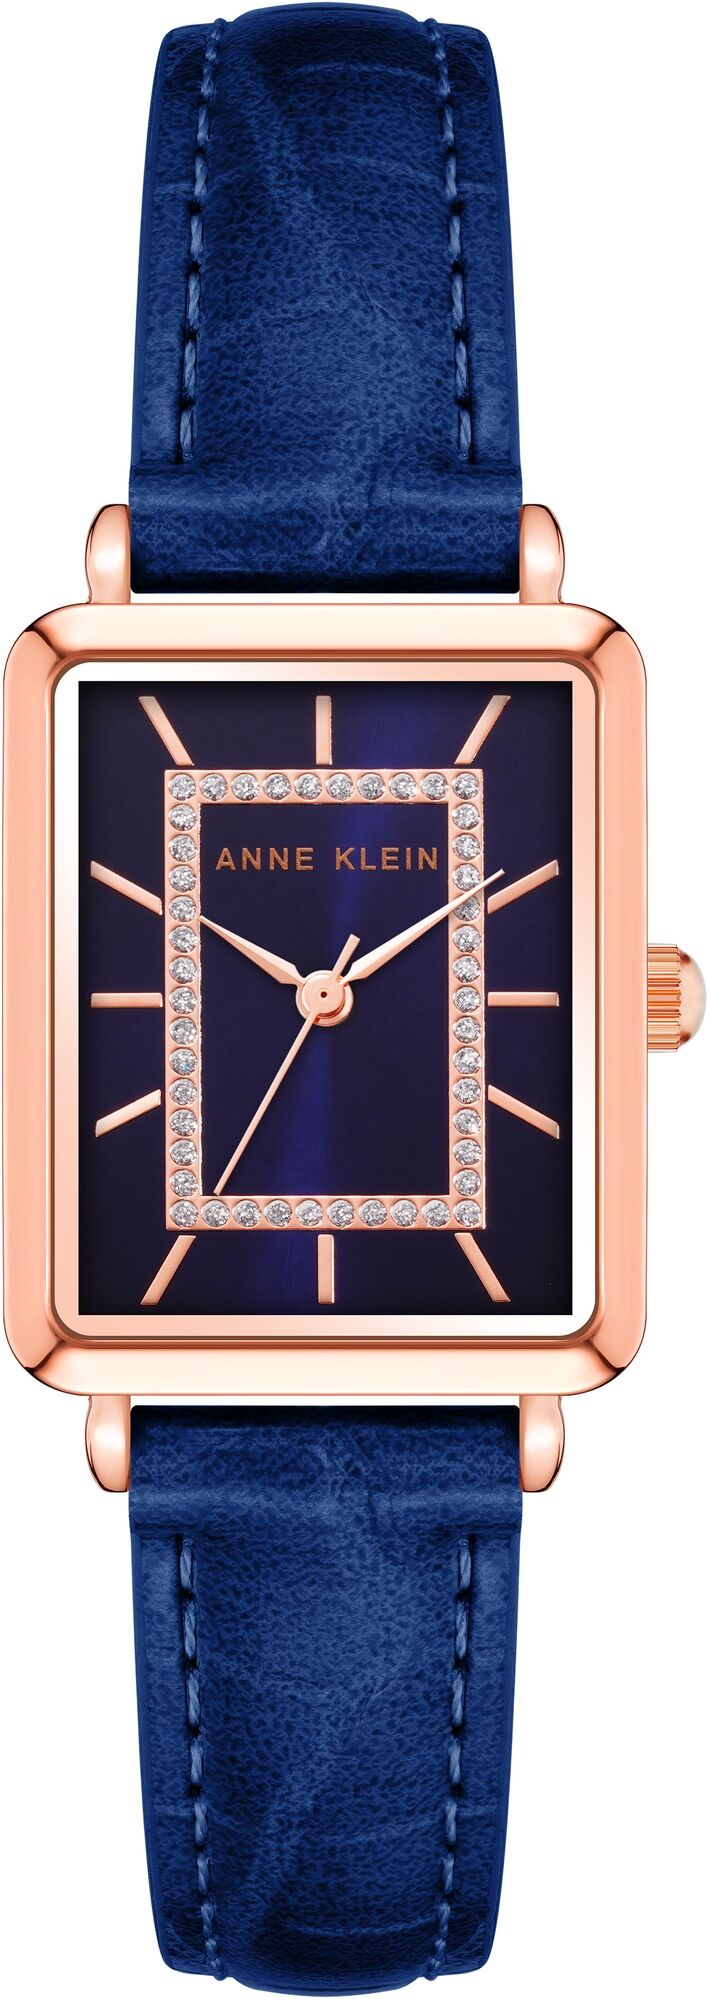 Женские наручные часы Anne Klein Rectangular Leather 3820RGNV